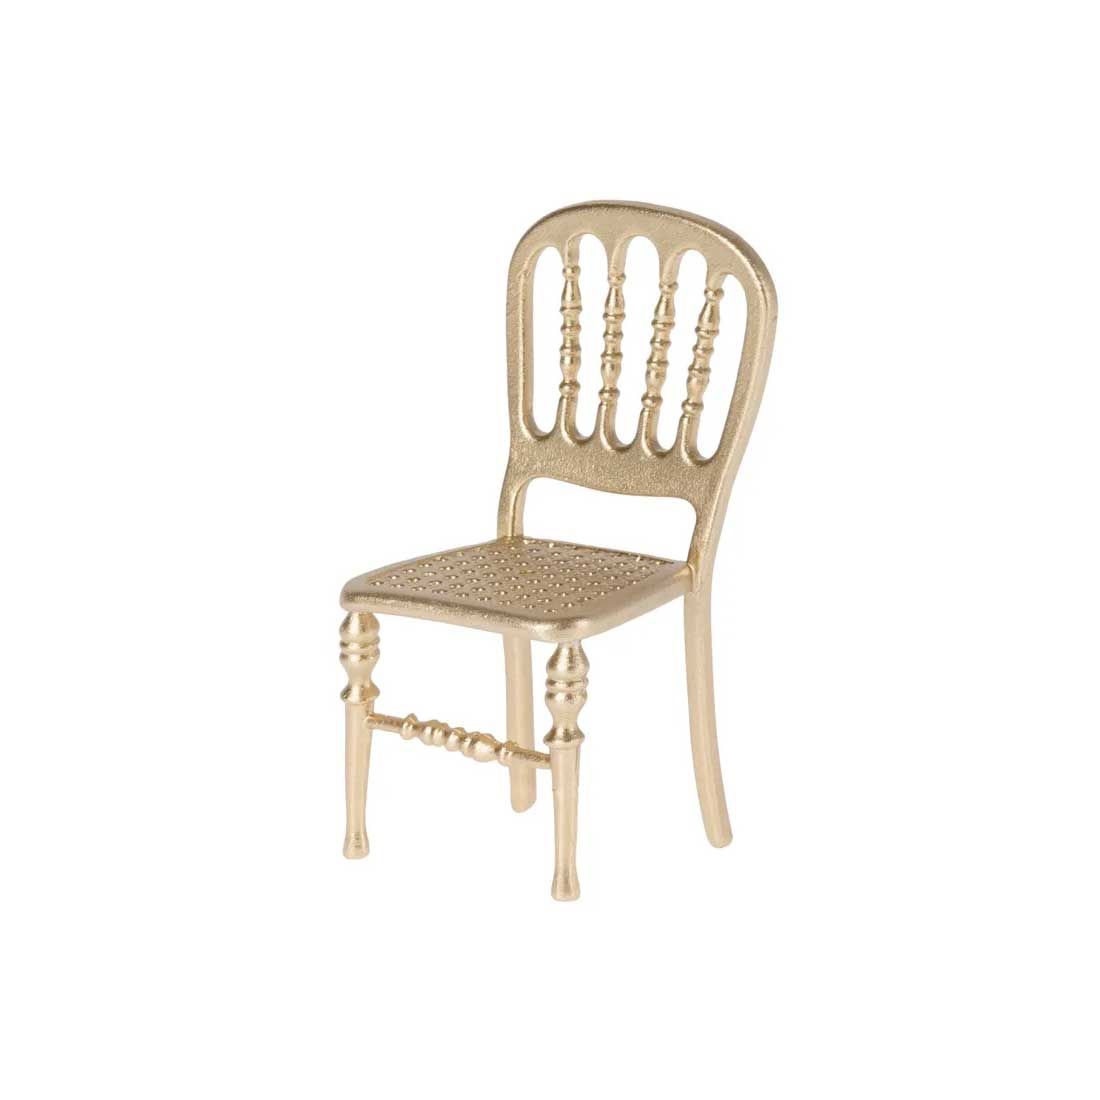 Guld micro stol med fransk flet og mønster på ryglænet.